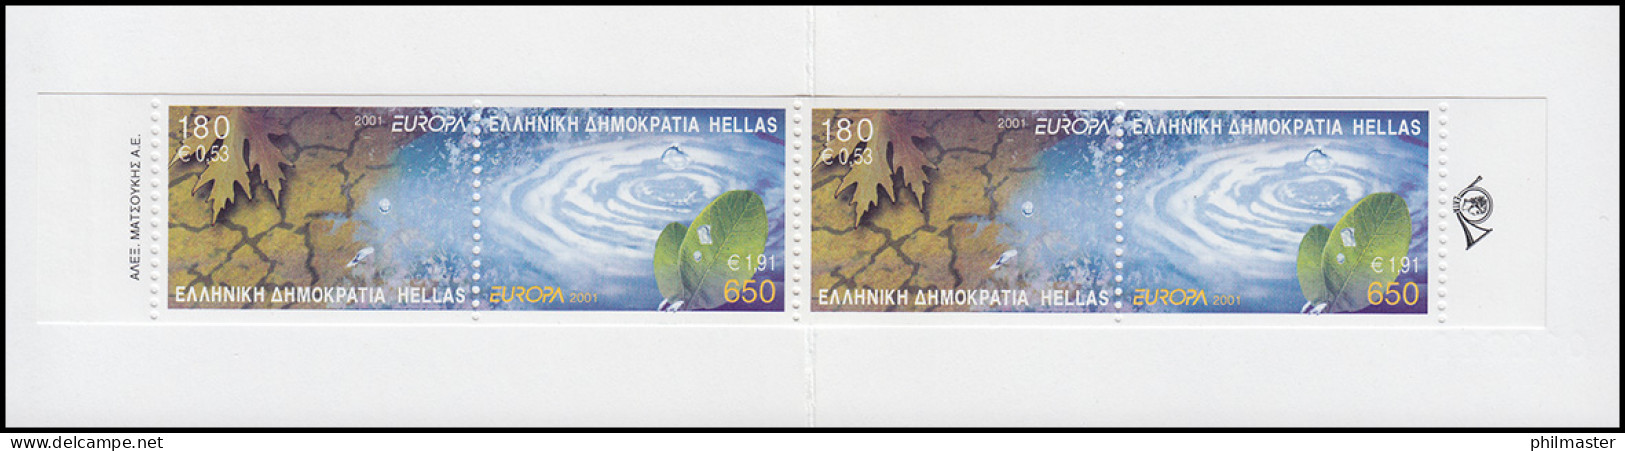 Griechenland Markenheftchen 23 Europa 2001, ** Postfrisch - Cuadernillos